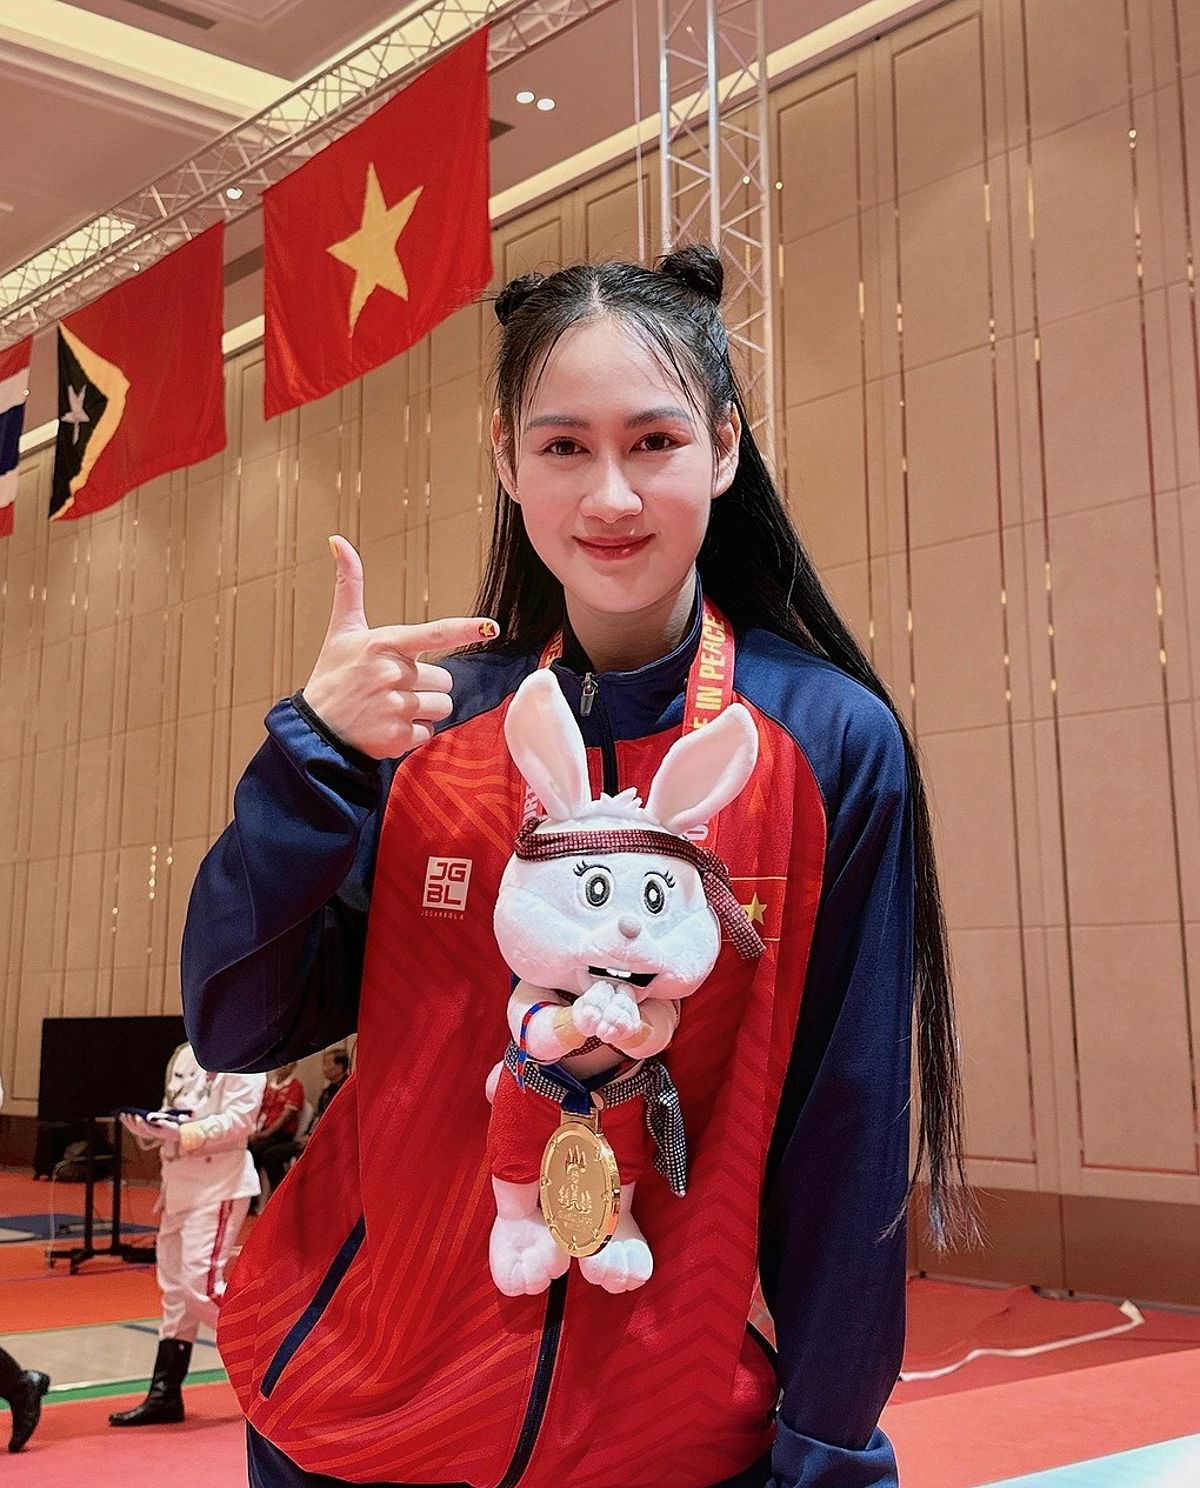 Lê Minh Hằng: Vận động viên đấu kiếm nổi tiếng Việt Nam với nhan sắc xinh đẹp và thành công tại SEA Games - -1167020385